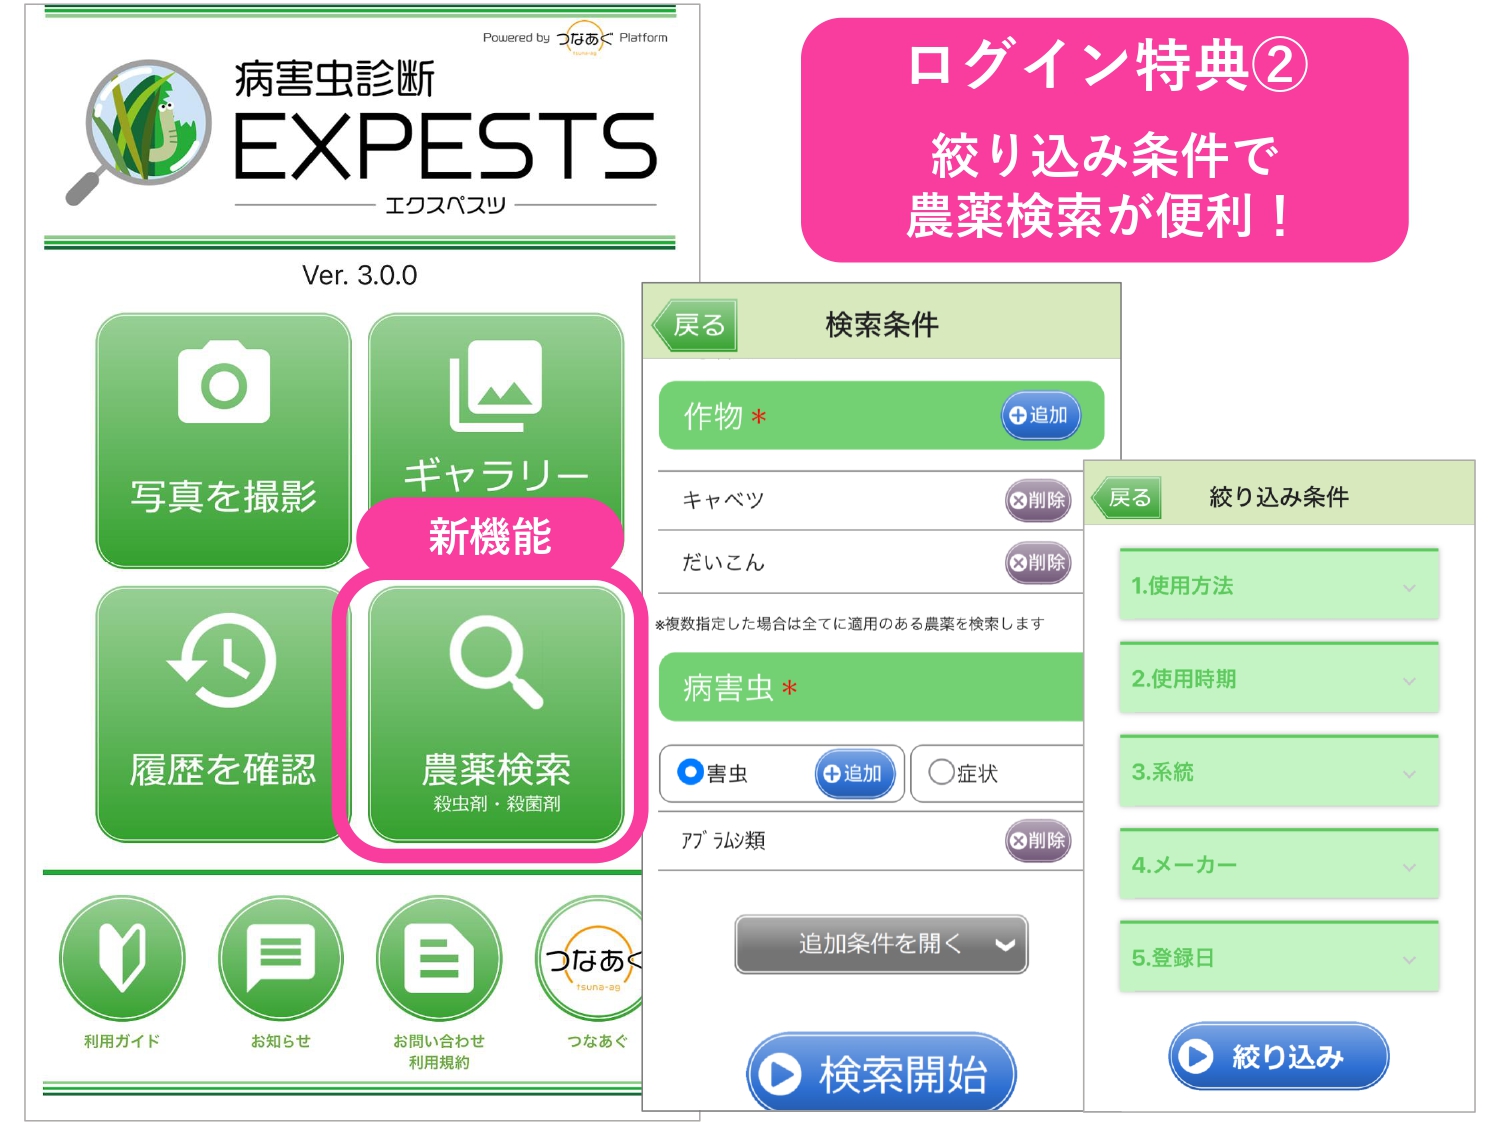 病害虫診断アプリ「EXPESTS（エクスペスツ）」農薬検索機能を追加